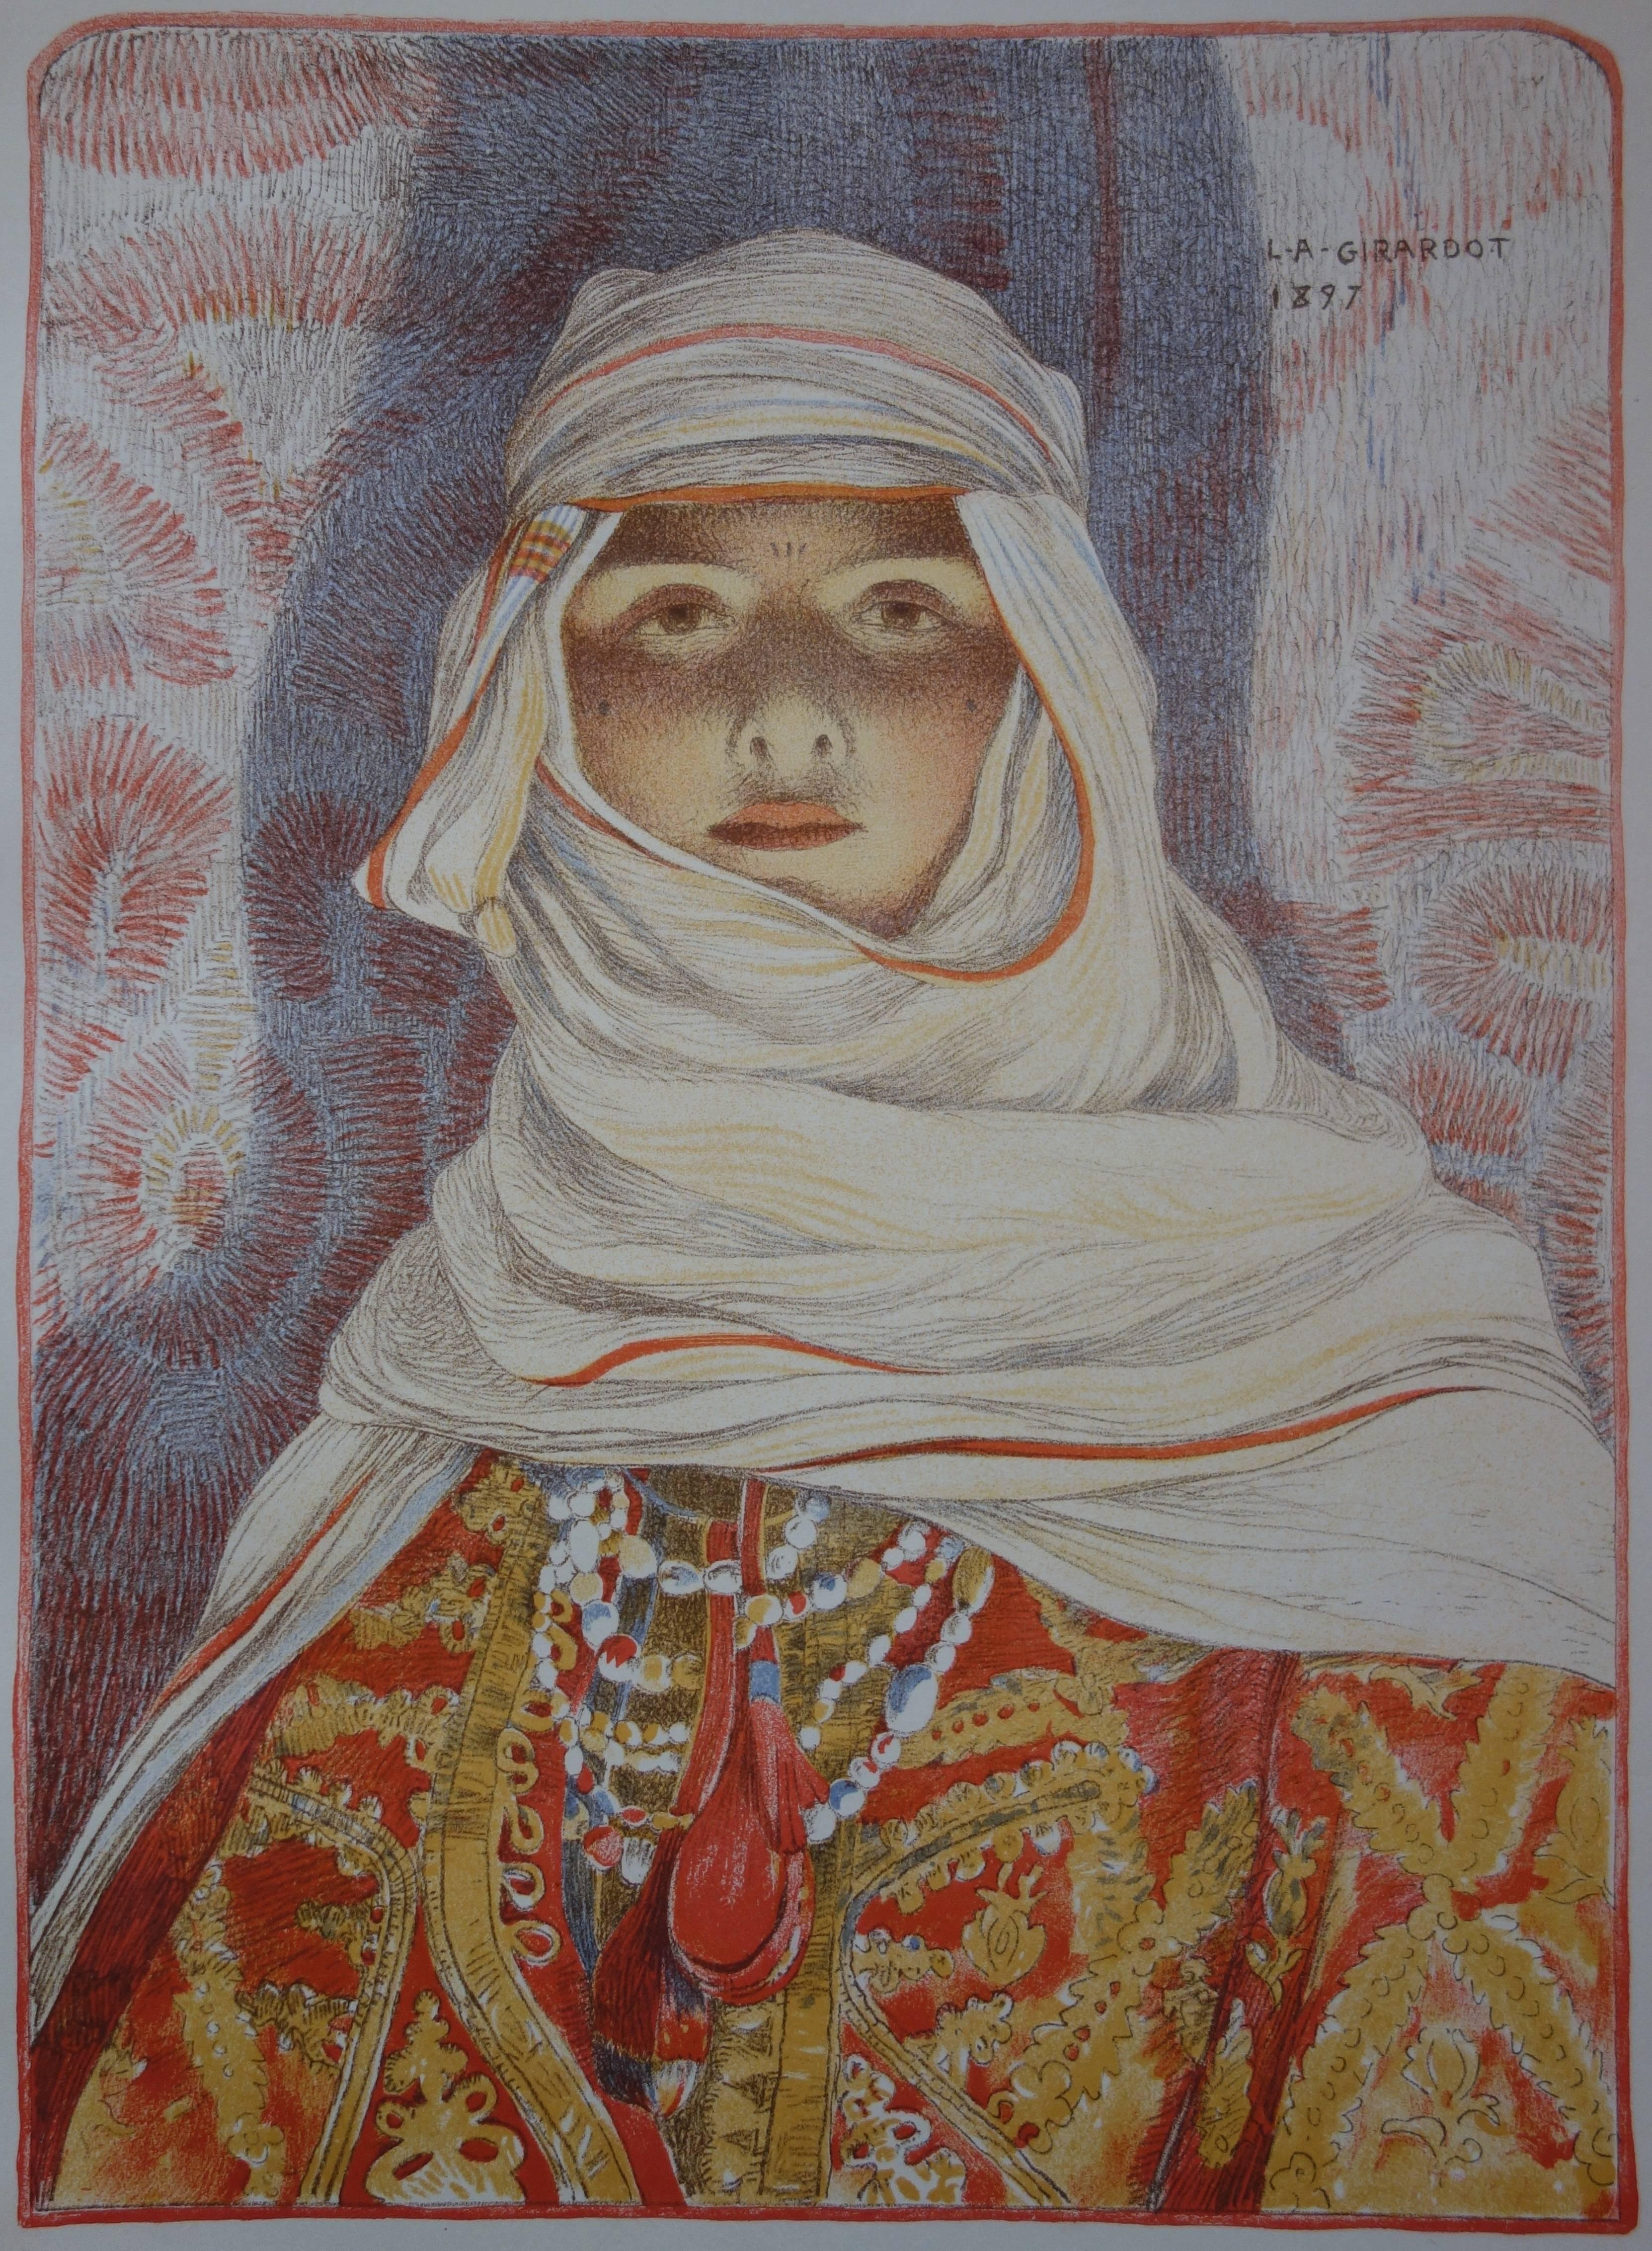 Oriental Woman (Femme du Riff) - original lithograph (1897-1898) - Art Nouveau Print by Louis-Abel Girardot